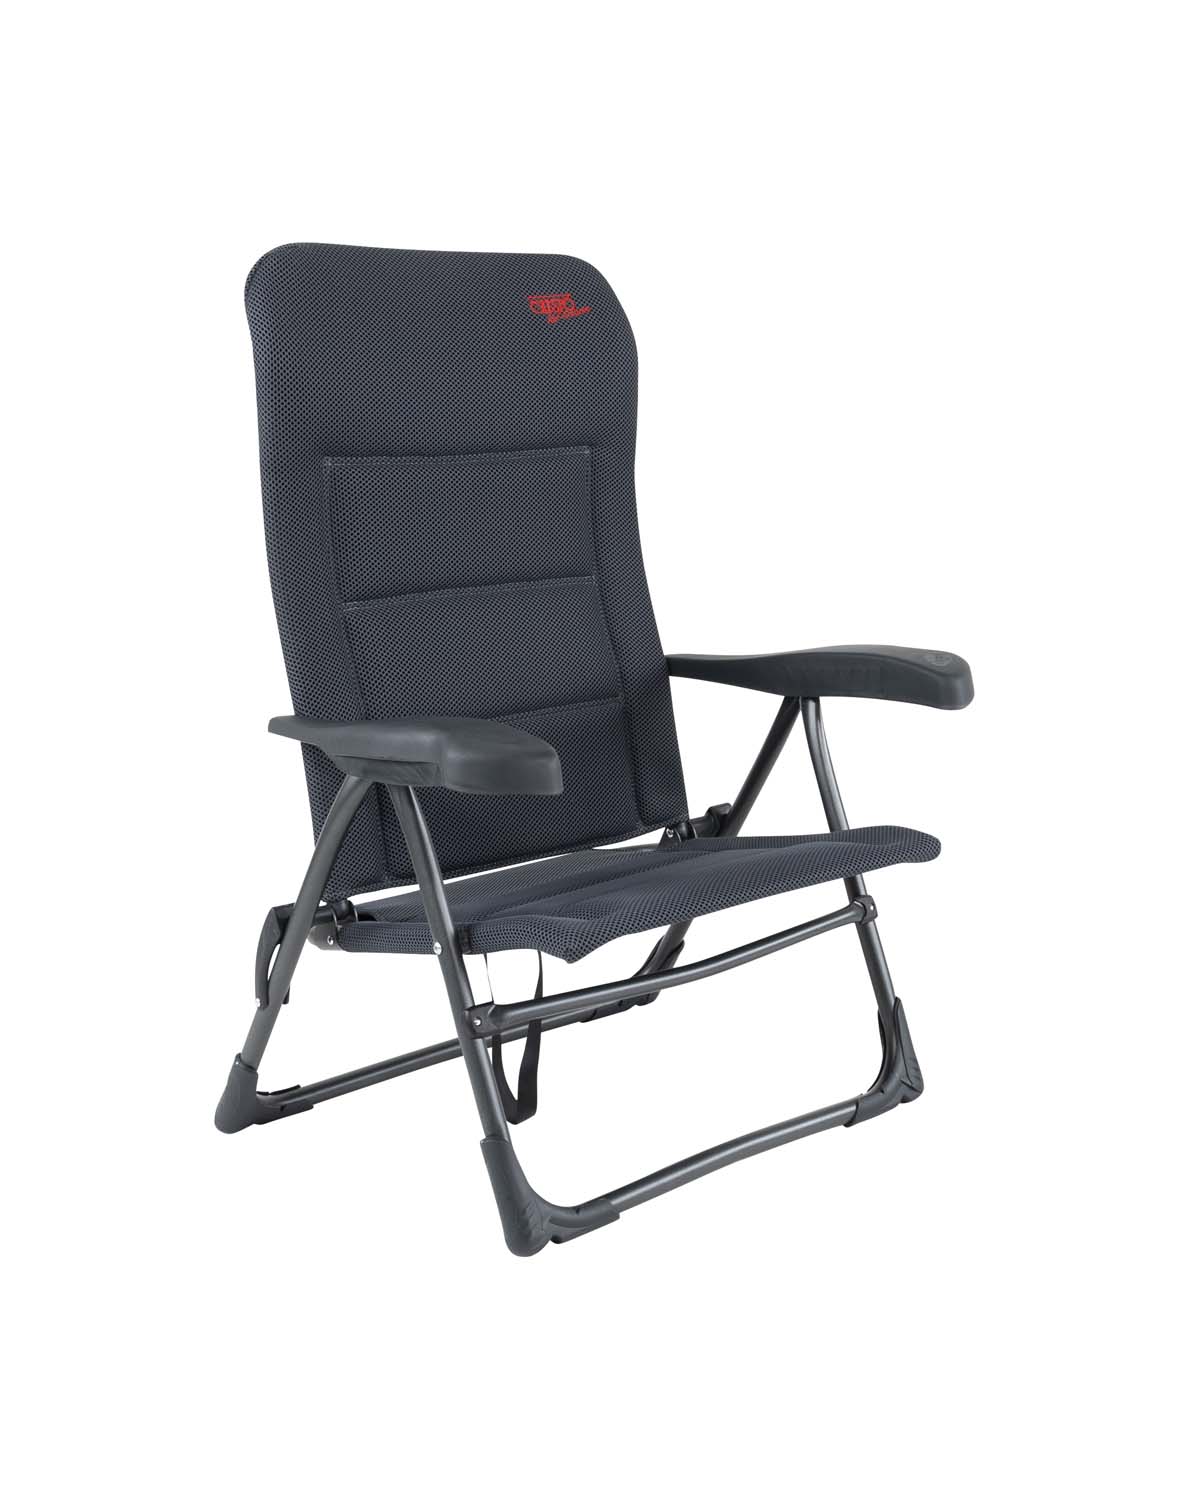 1149401 Een luxe en comfortabele strandstoel. Zeer comfortabel door de Dry Foam stoffering. De comfortabele vulling van deze stof heeft een open celstructuur waardoor geen vocht wordt vastgehouden. Ideaal voor gebruik op het strand, voor de tent of voor onderweg. Deze stoel is verstelbaar in 7 standen. Daarnaast is deze strandstoel voorzien van comfortabele armleuningen. Deze stoel is zeer compact en mede door de draaglussen gemakkelijk mee te nemen.